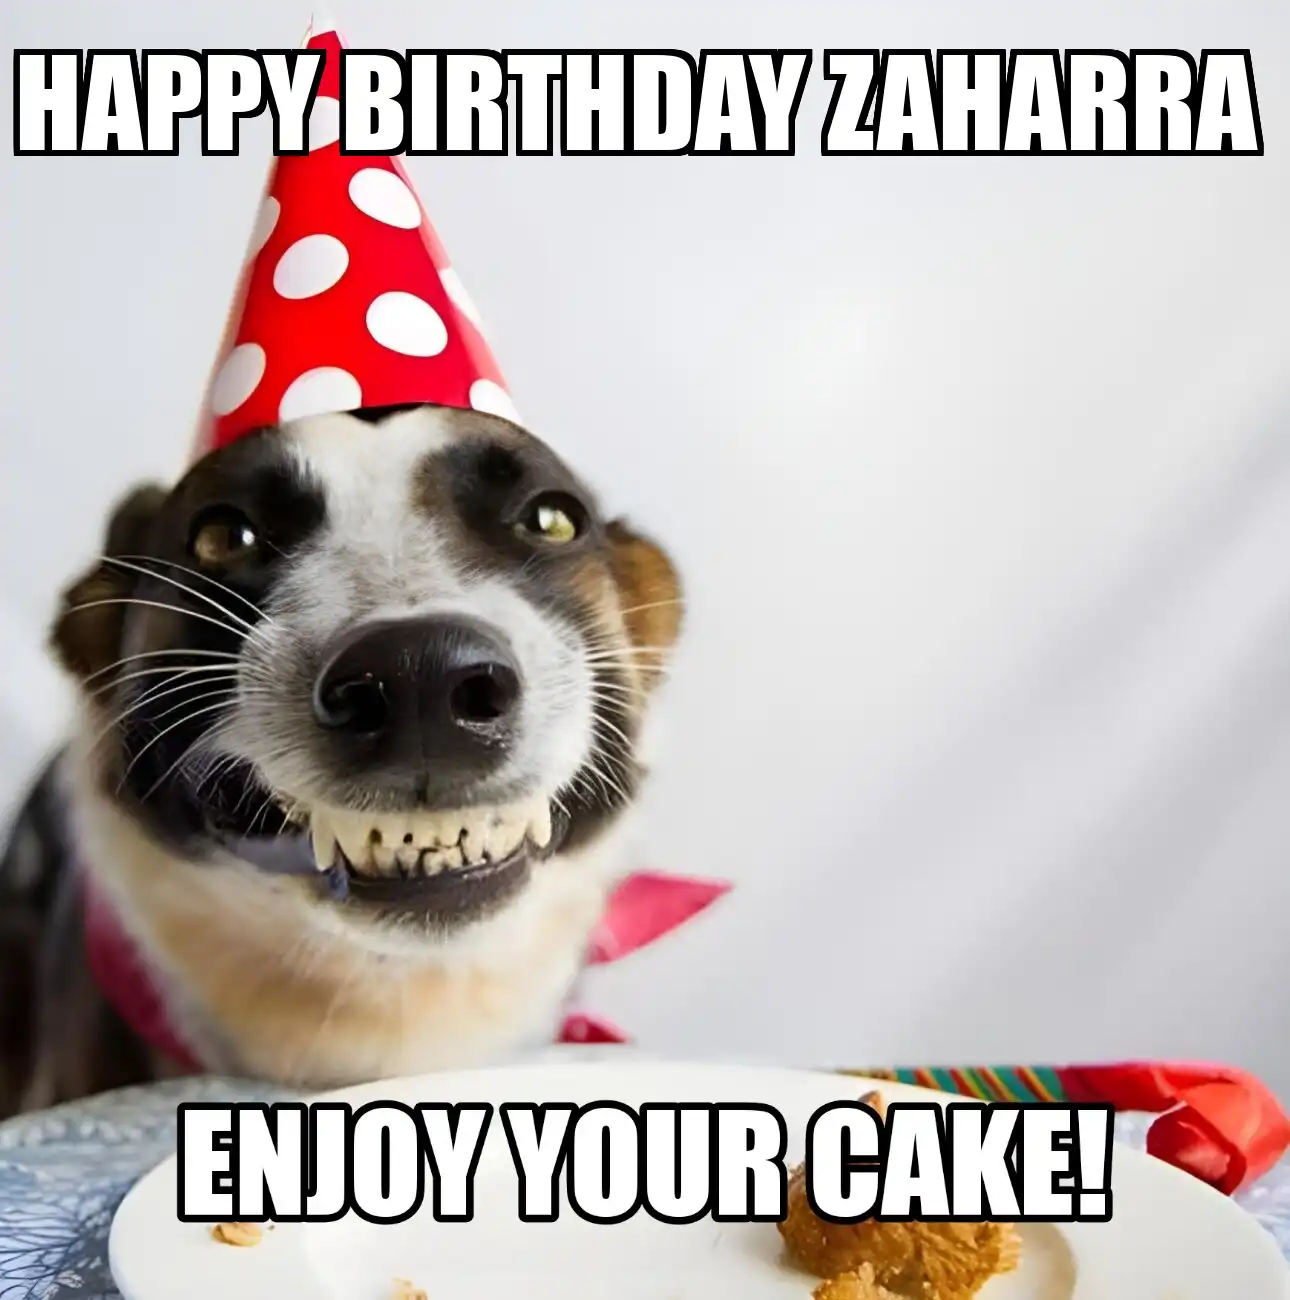 Happy Birthday Zaharra Enjoy Your Cake Dog Meme